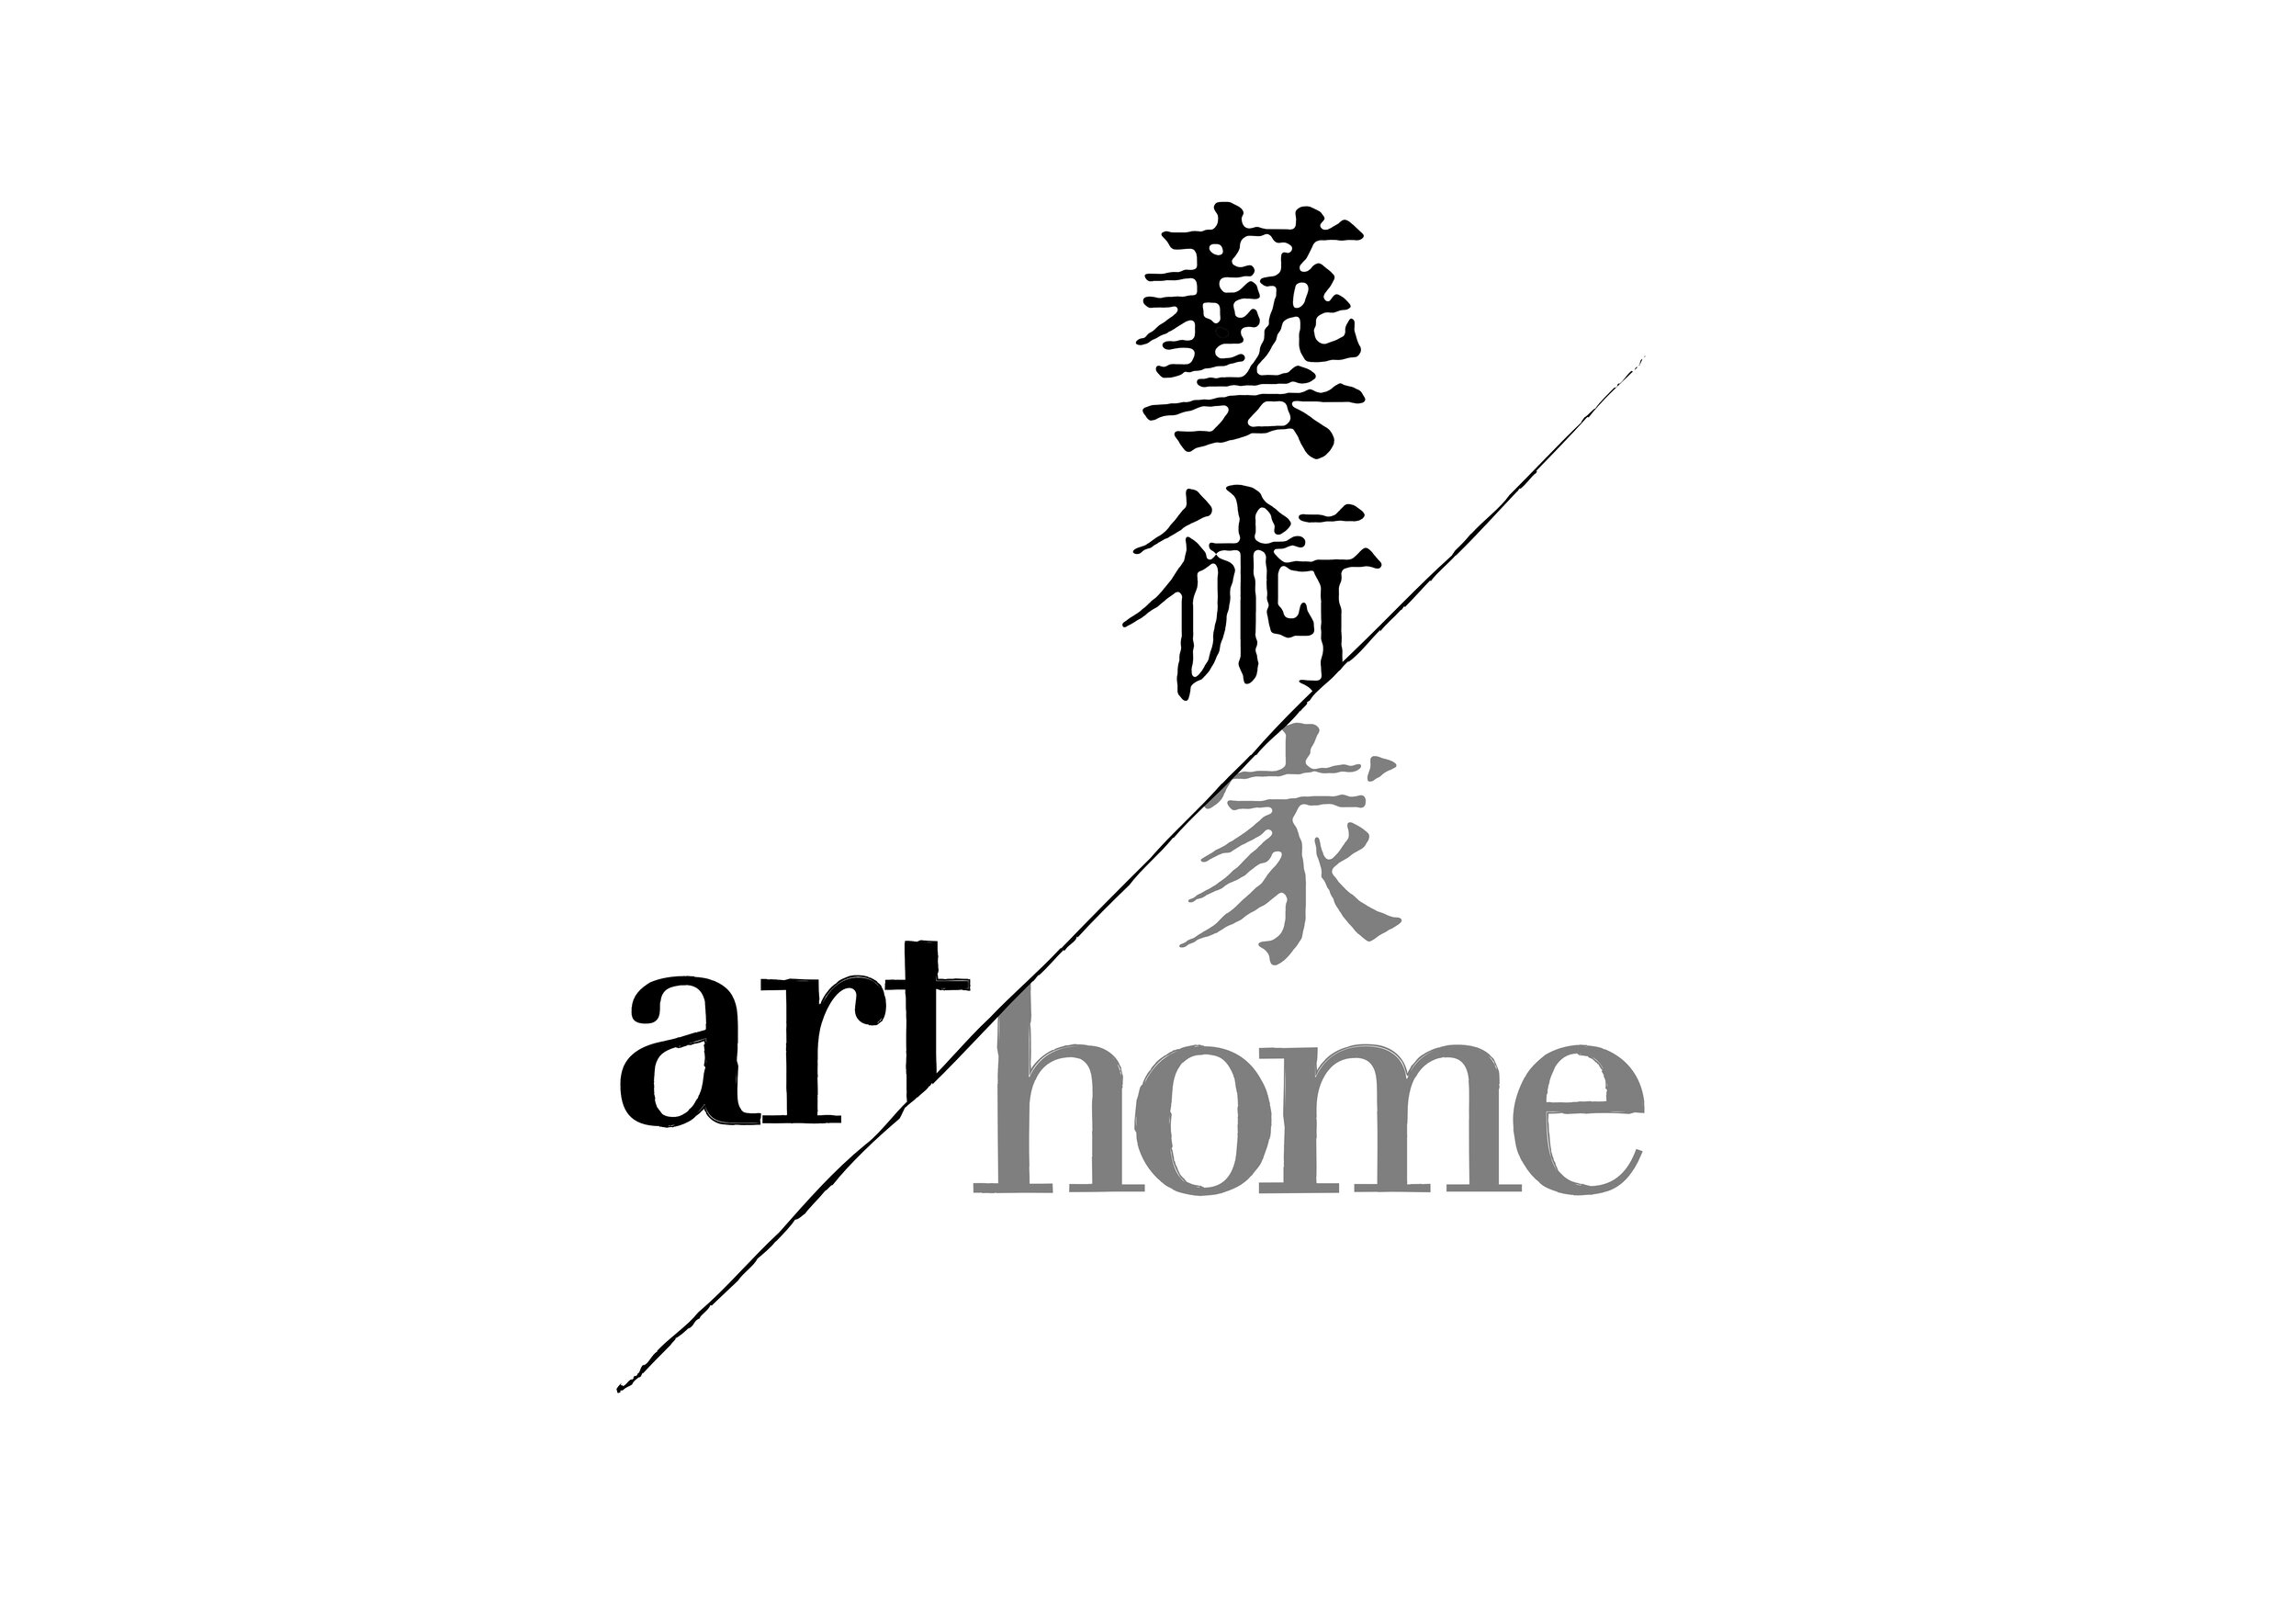 arthome logo outline.jpg